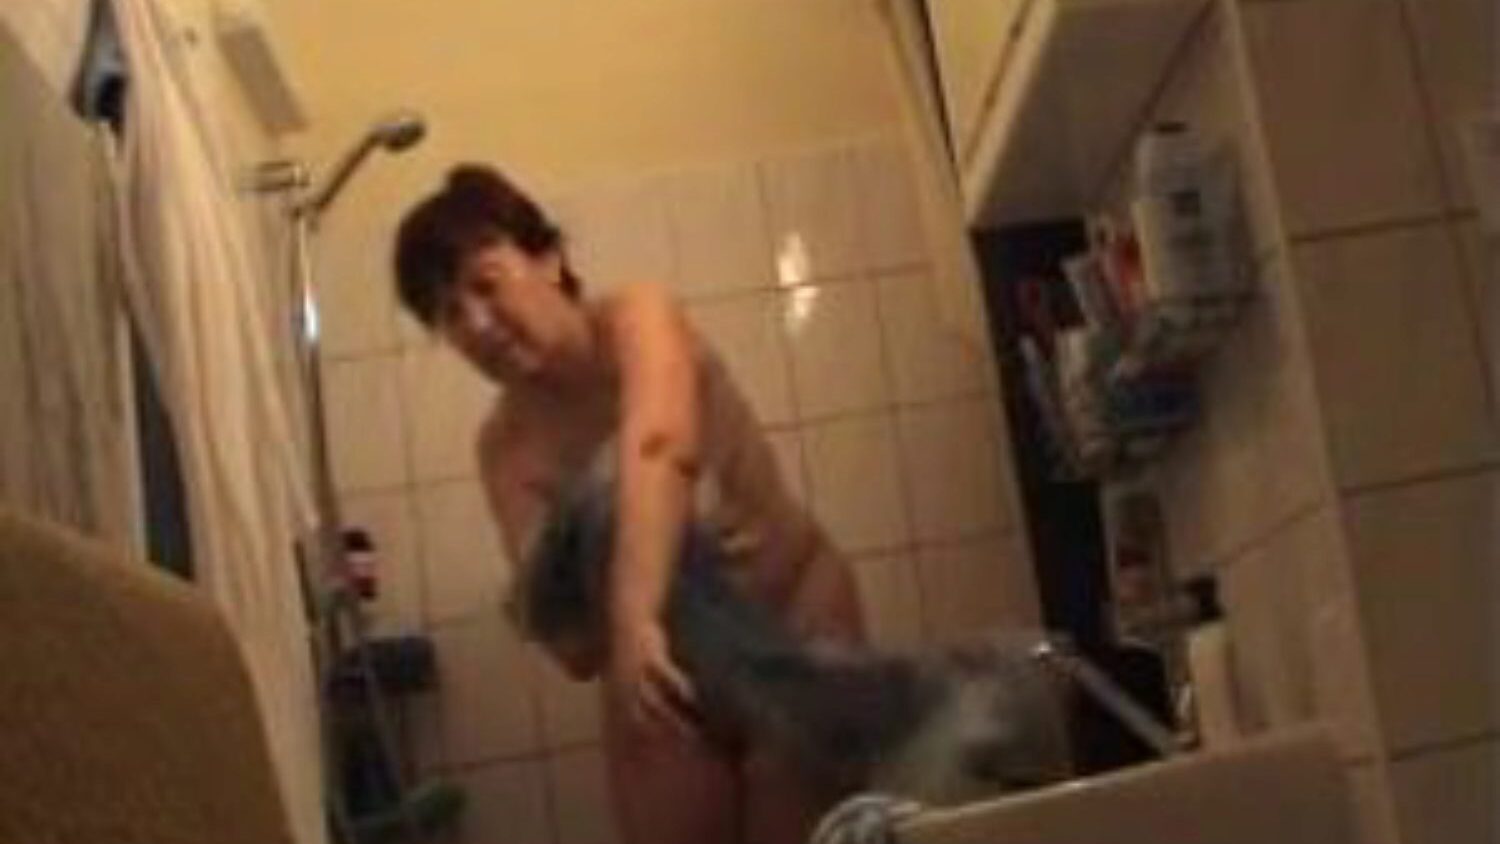 německá babička nahá v koupelně, německé porno video zdarma sledovat německá babička nahá v koupelně video na xhamsteru, nejtučnější webový zdroj pro připojení k internetu s hromadou bezplatných německých nahých babiček a zralých pornografických filmů